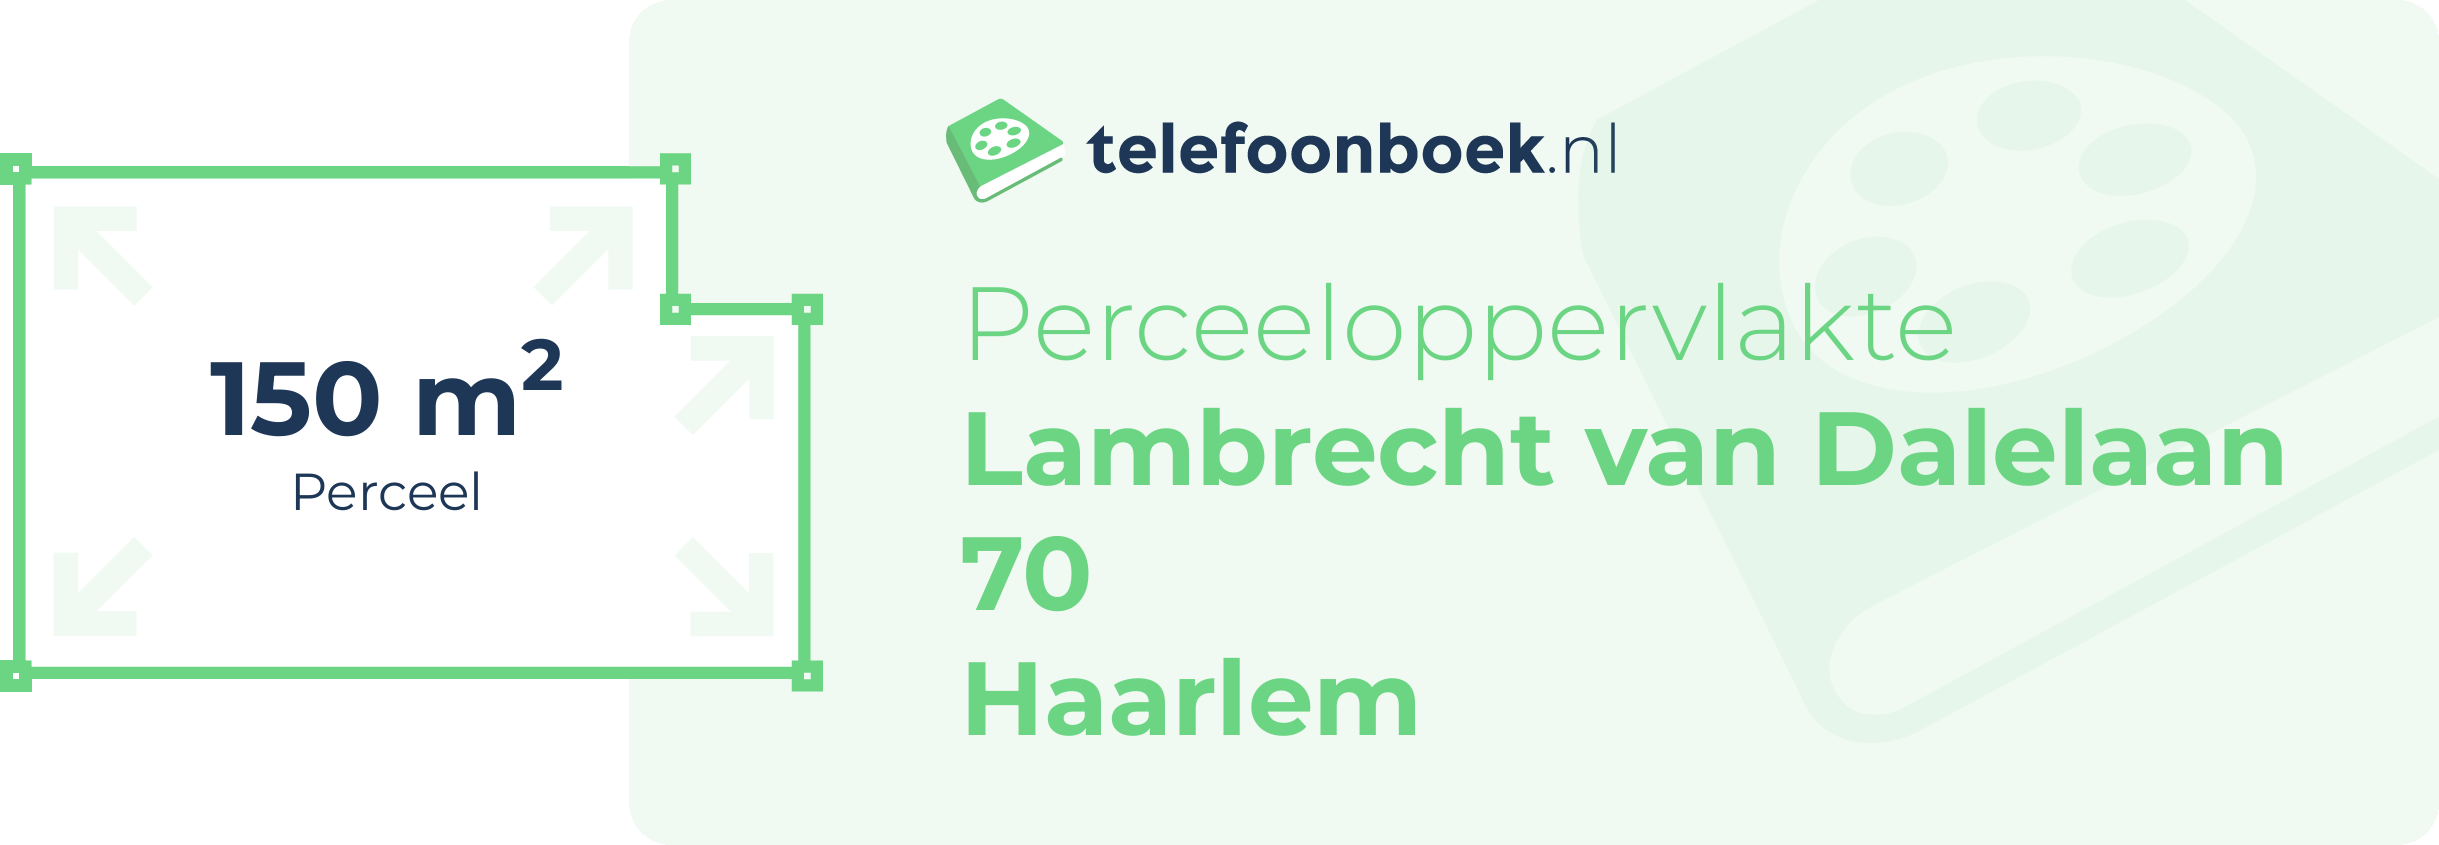 Perceeloppervlakte Lambrecht Van Dalelaan 70 Haarlem